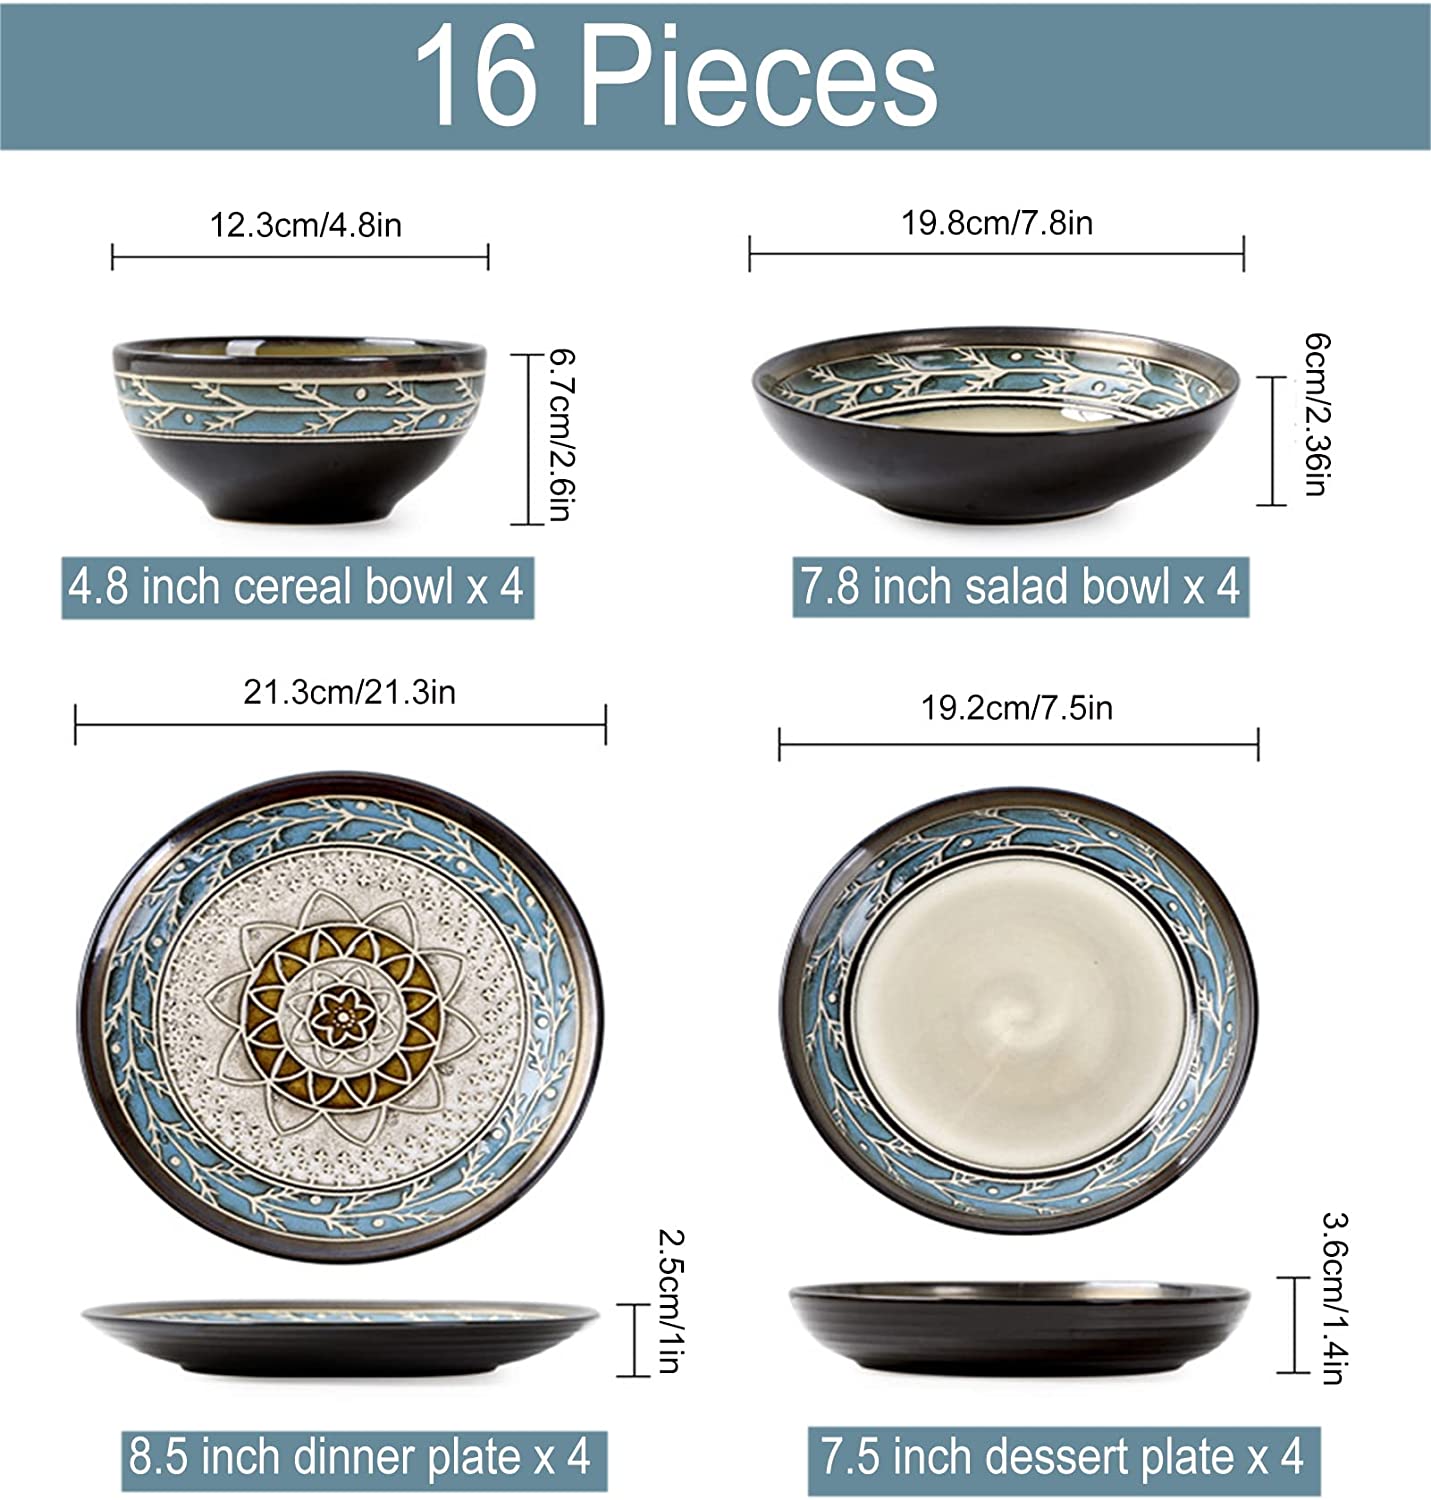 سرویس غذاخوری16 تکه 16-Piece Porcelain Dinnerware Set - ارسال 15 الی 20 روز کاری